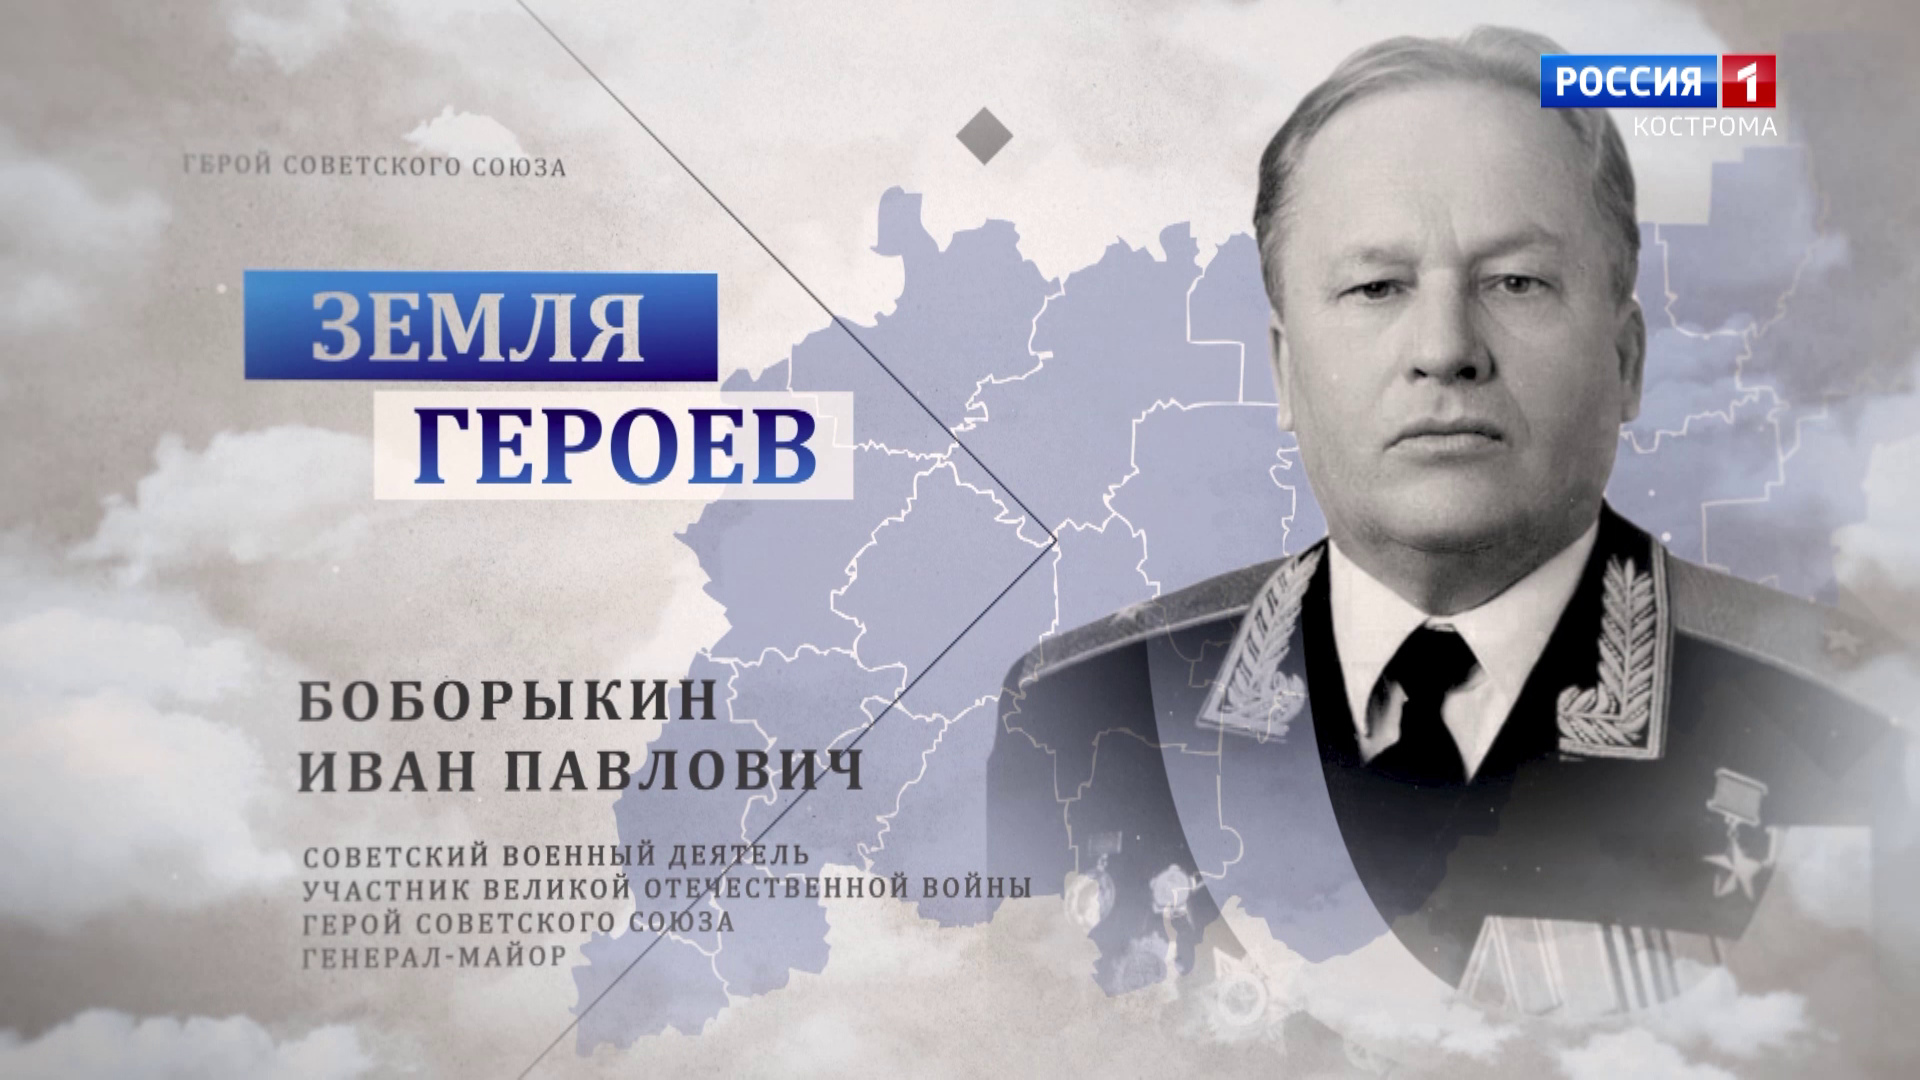 Земля героев: генерал-майор Иван Боборыкин